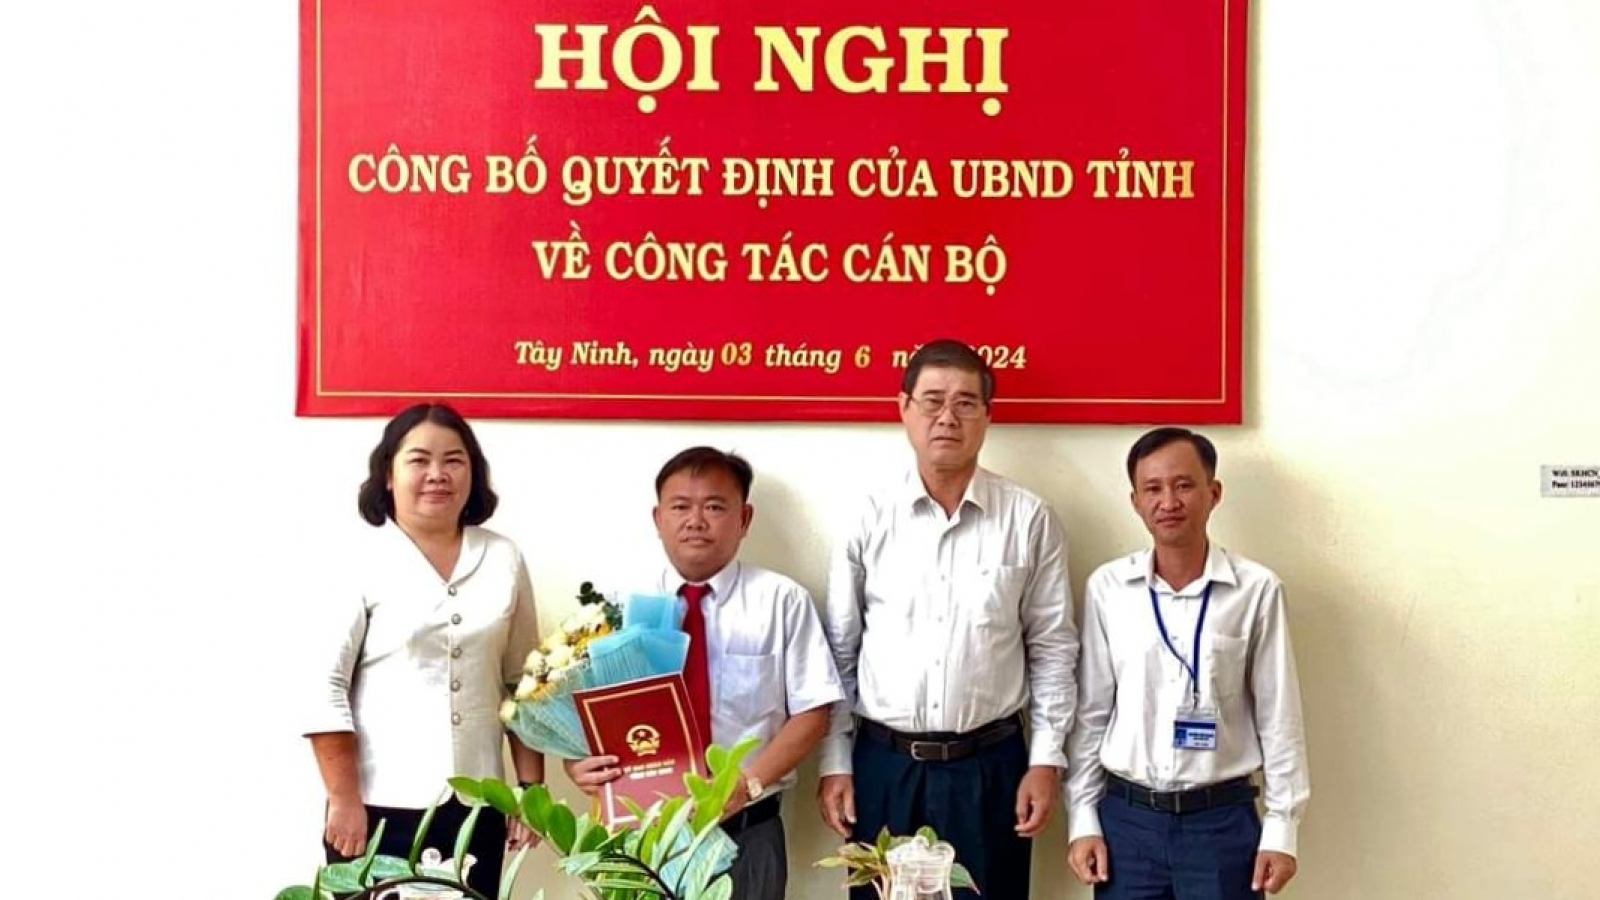 Ông Hà Minh Dảo làm Phó Giám đốc Sở Khoa học và Công nghệ tỉnh Tây Ninh